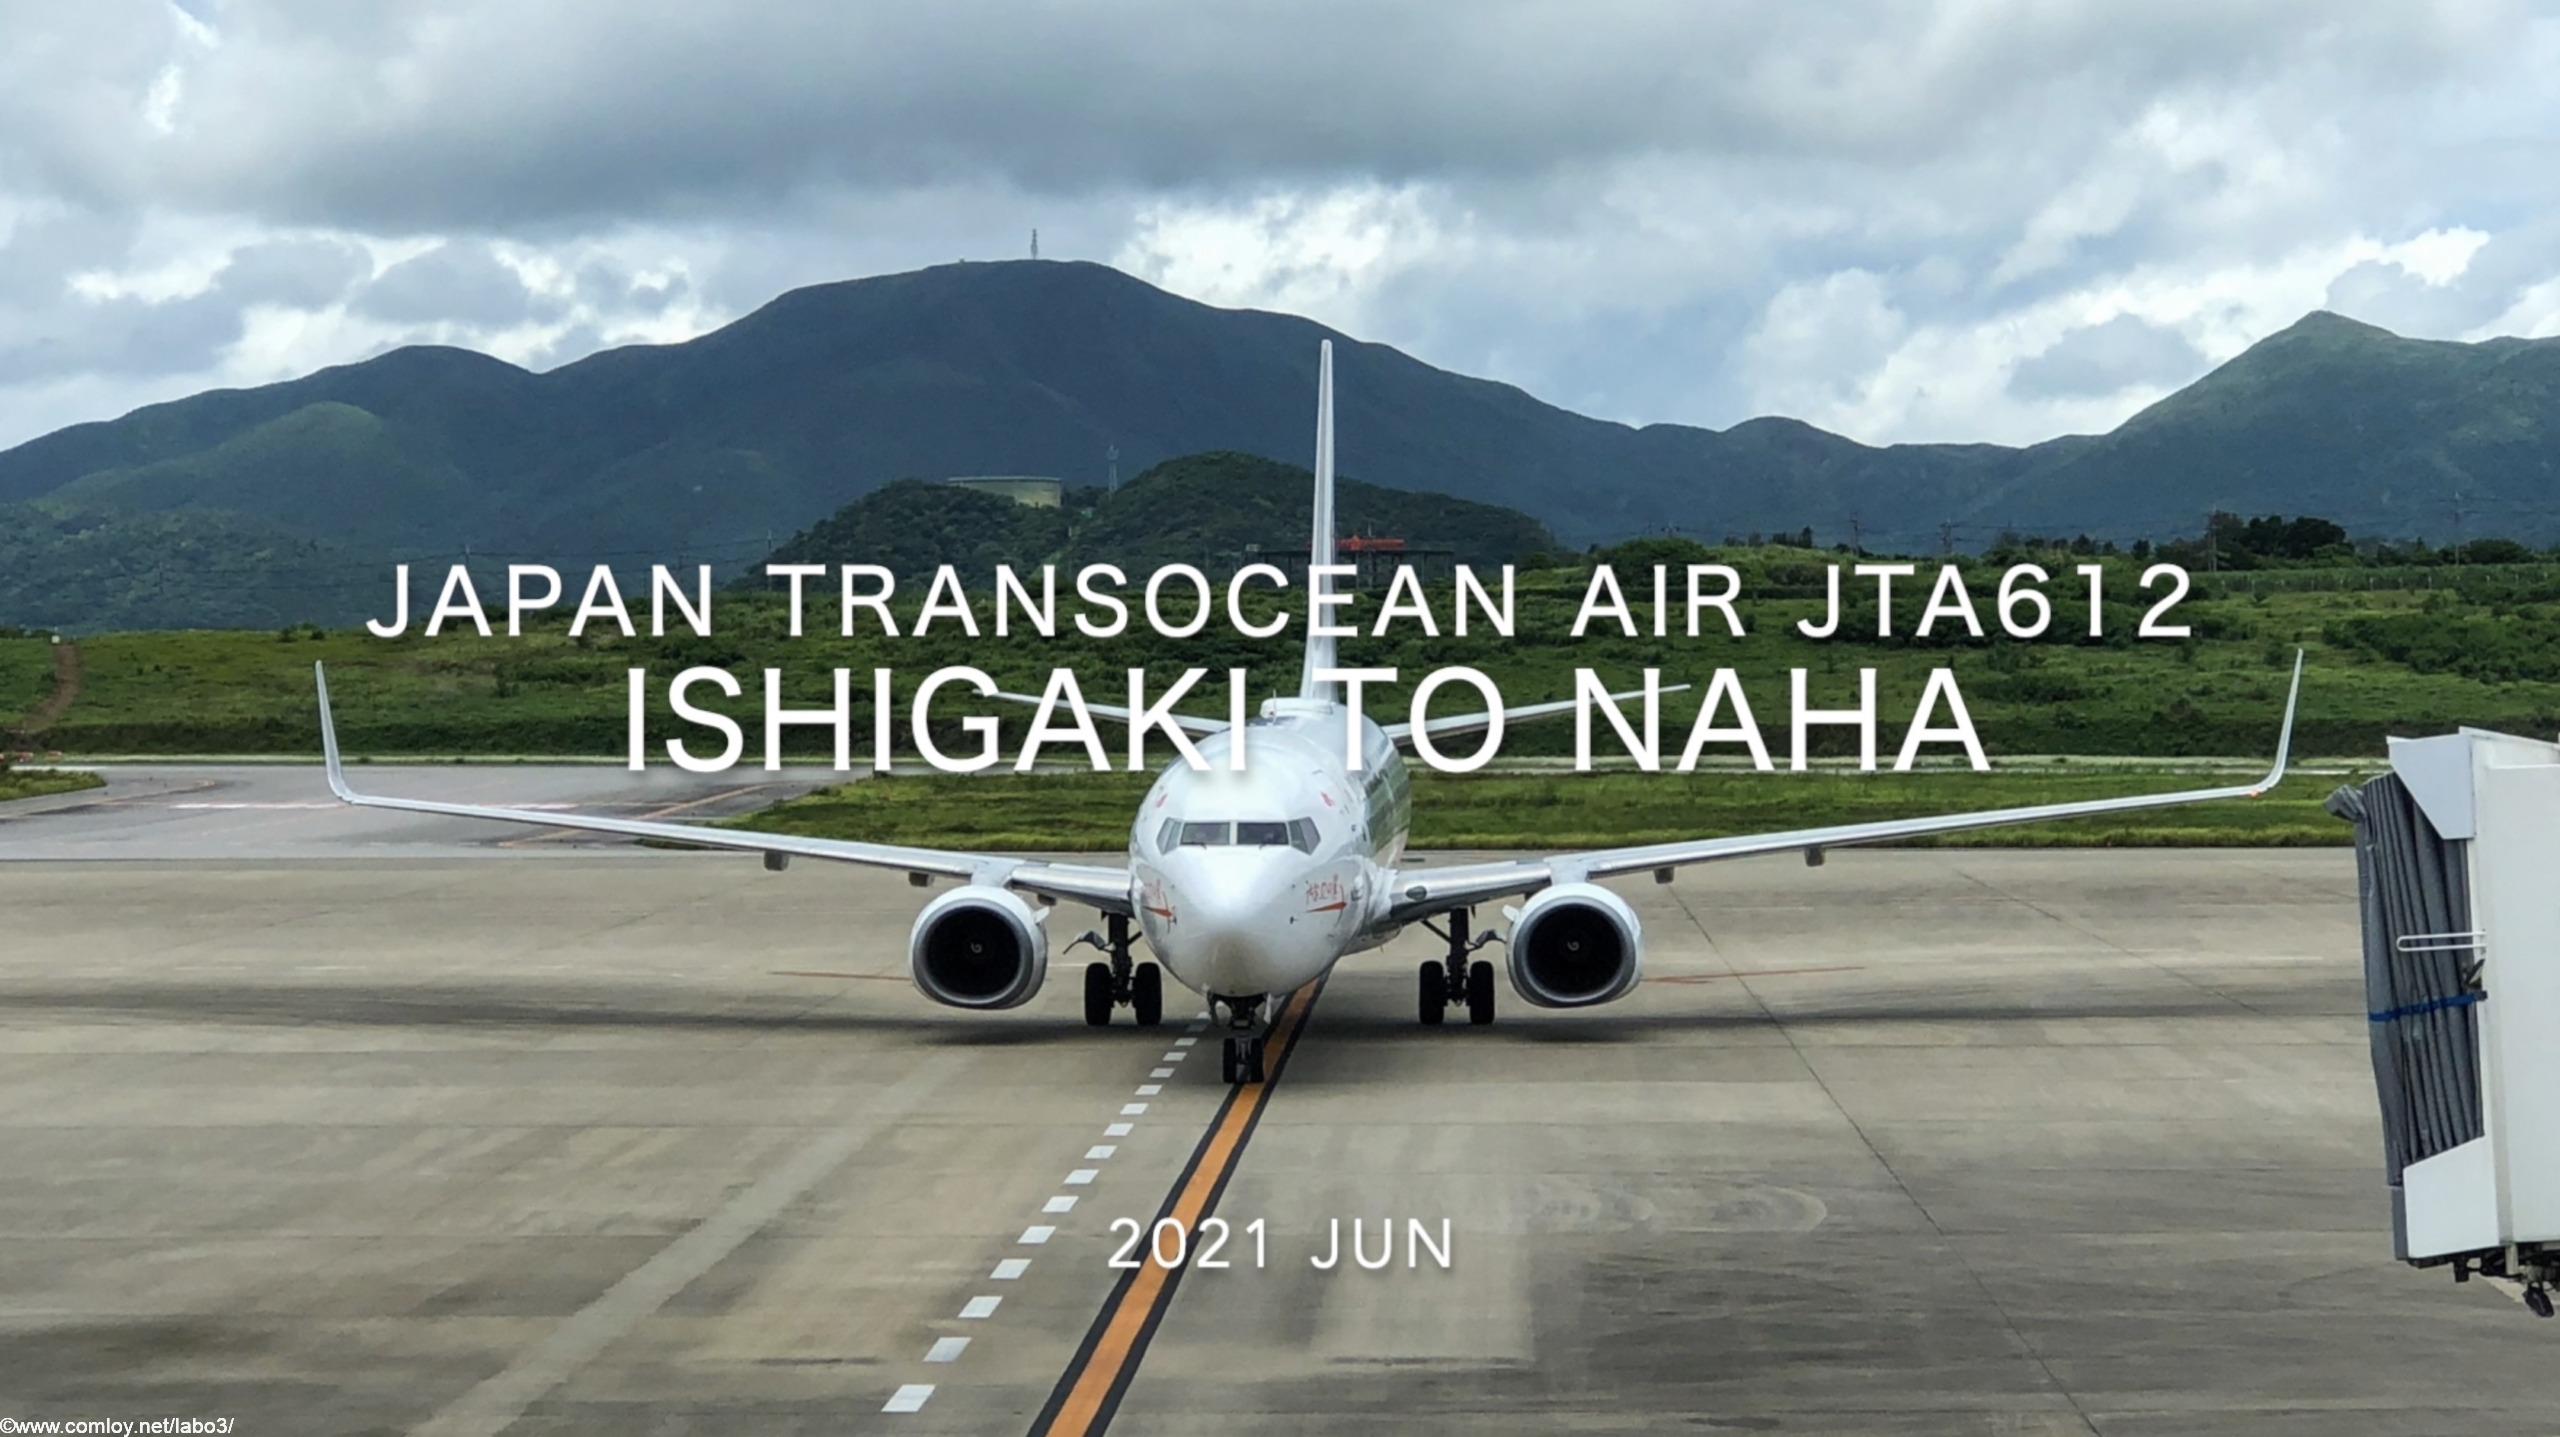 【Flight Report】2021 Jun Japan Transocean Air JTA612 ISHIGAKI TO NAHA 日本トランスオーシャン航空 石垣 - 那覇 搭乗記